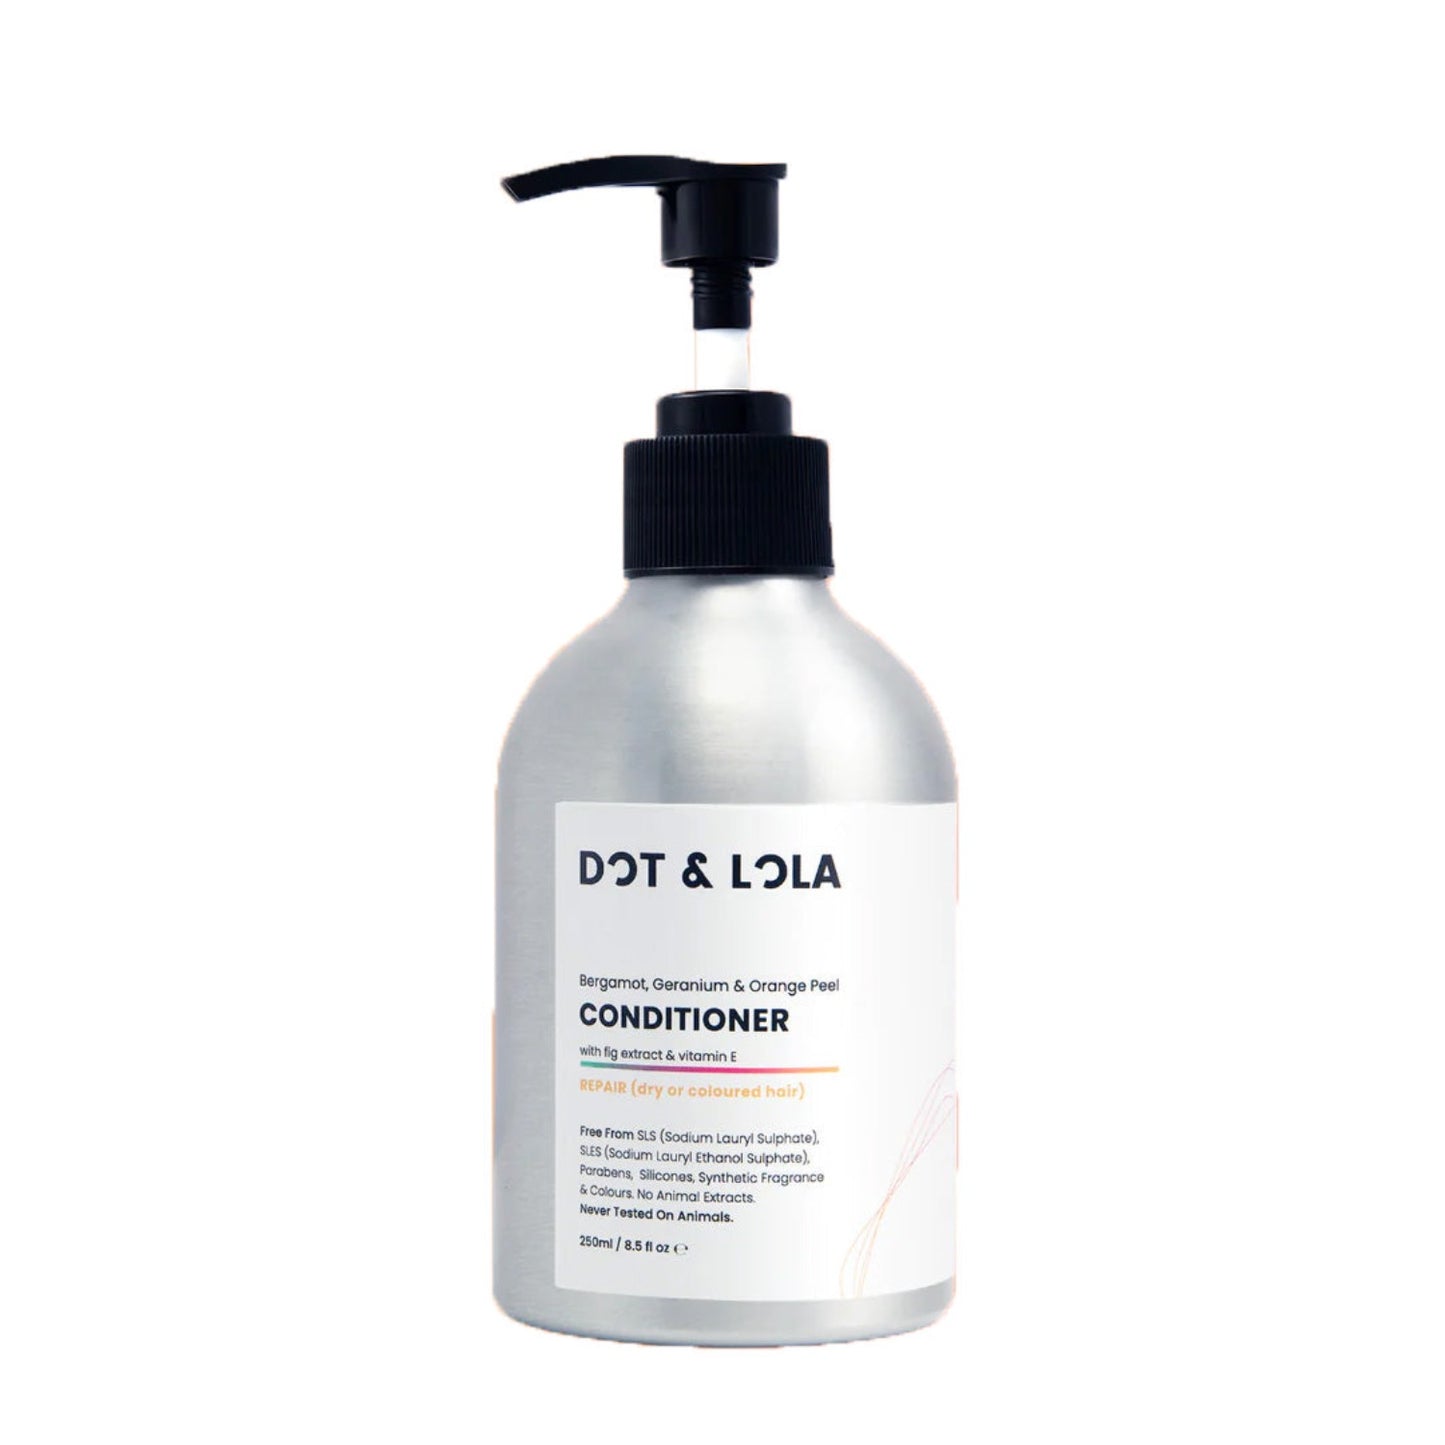 DOT & LOLA Repair Conditioner With Bergamot, Geranium & Orange Peel expertly nurtures dry or damaged hair.